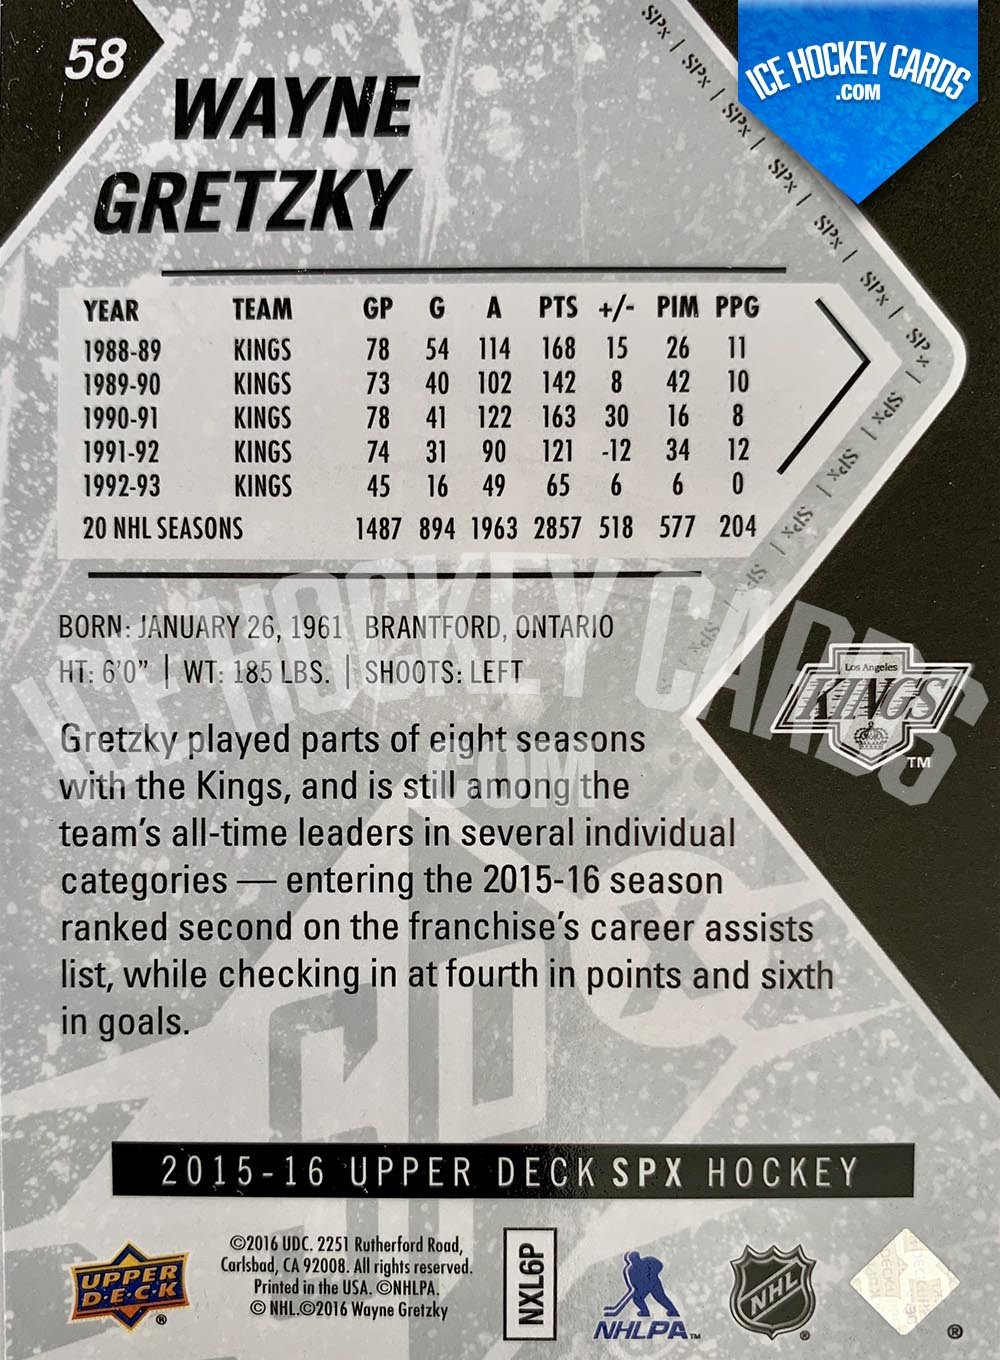 Upper Deck - SPx 2015-16 - Wayne Gretzky Base Card back